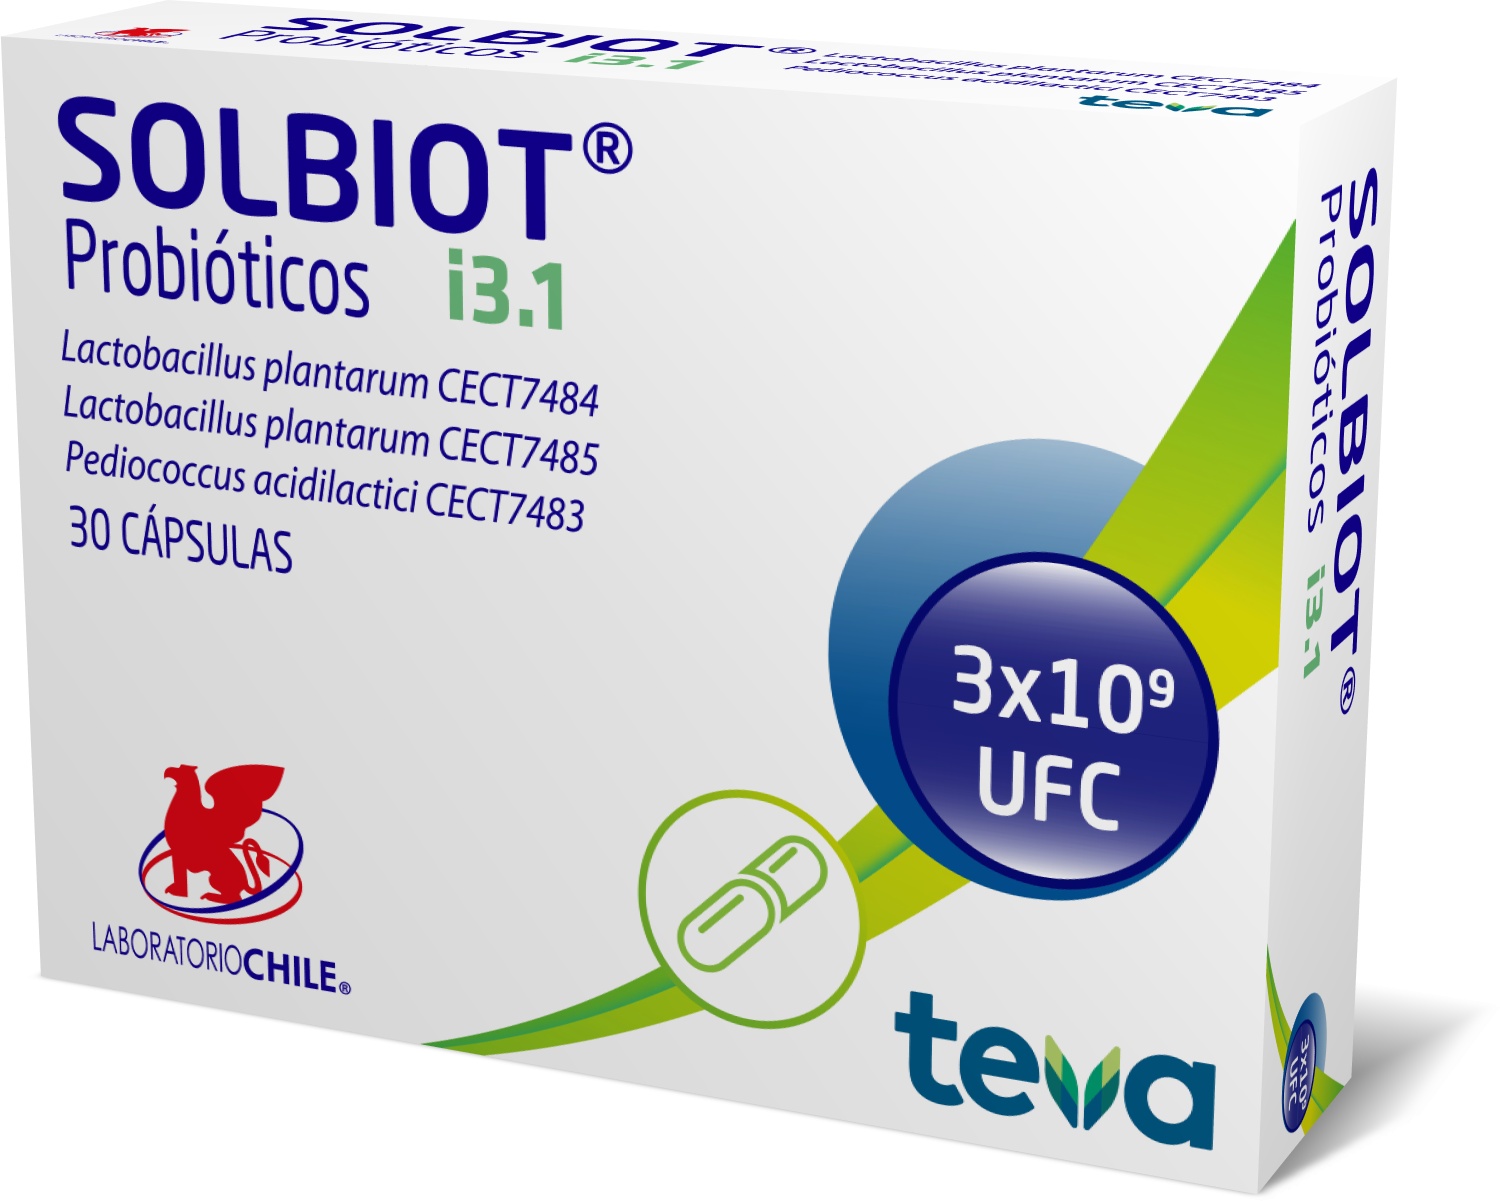 Solbiot® i3.1